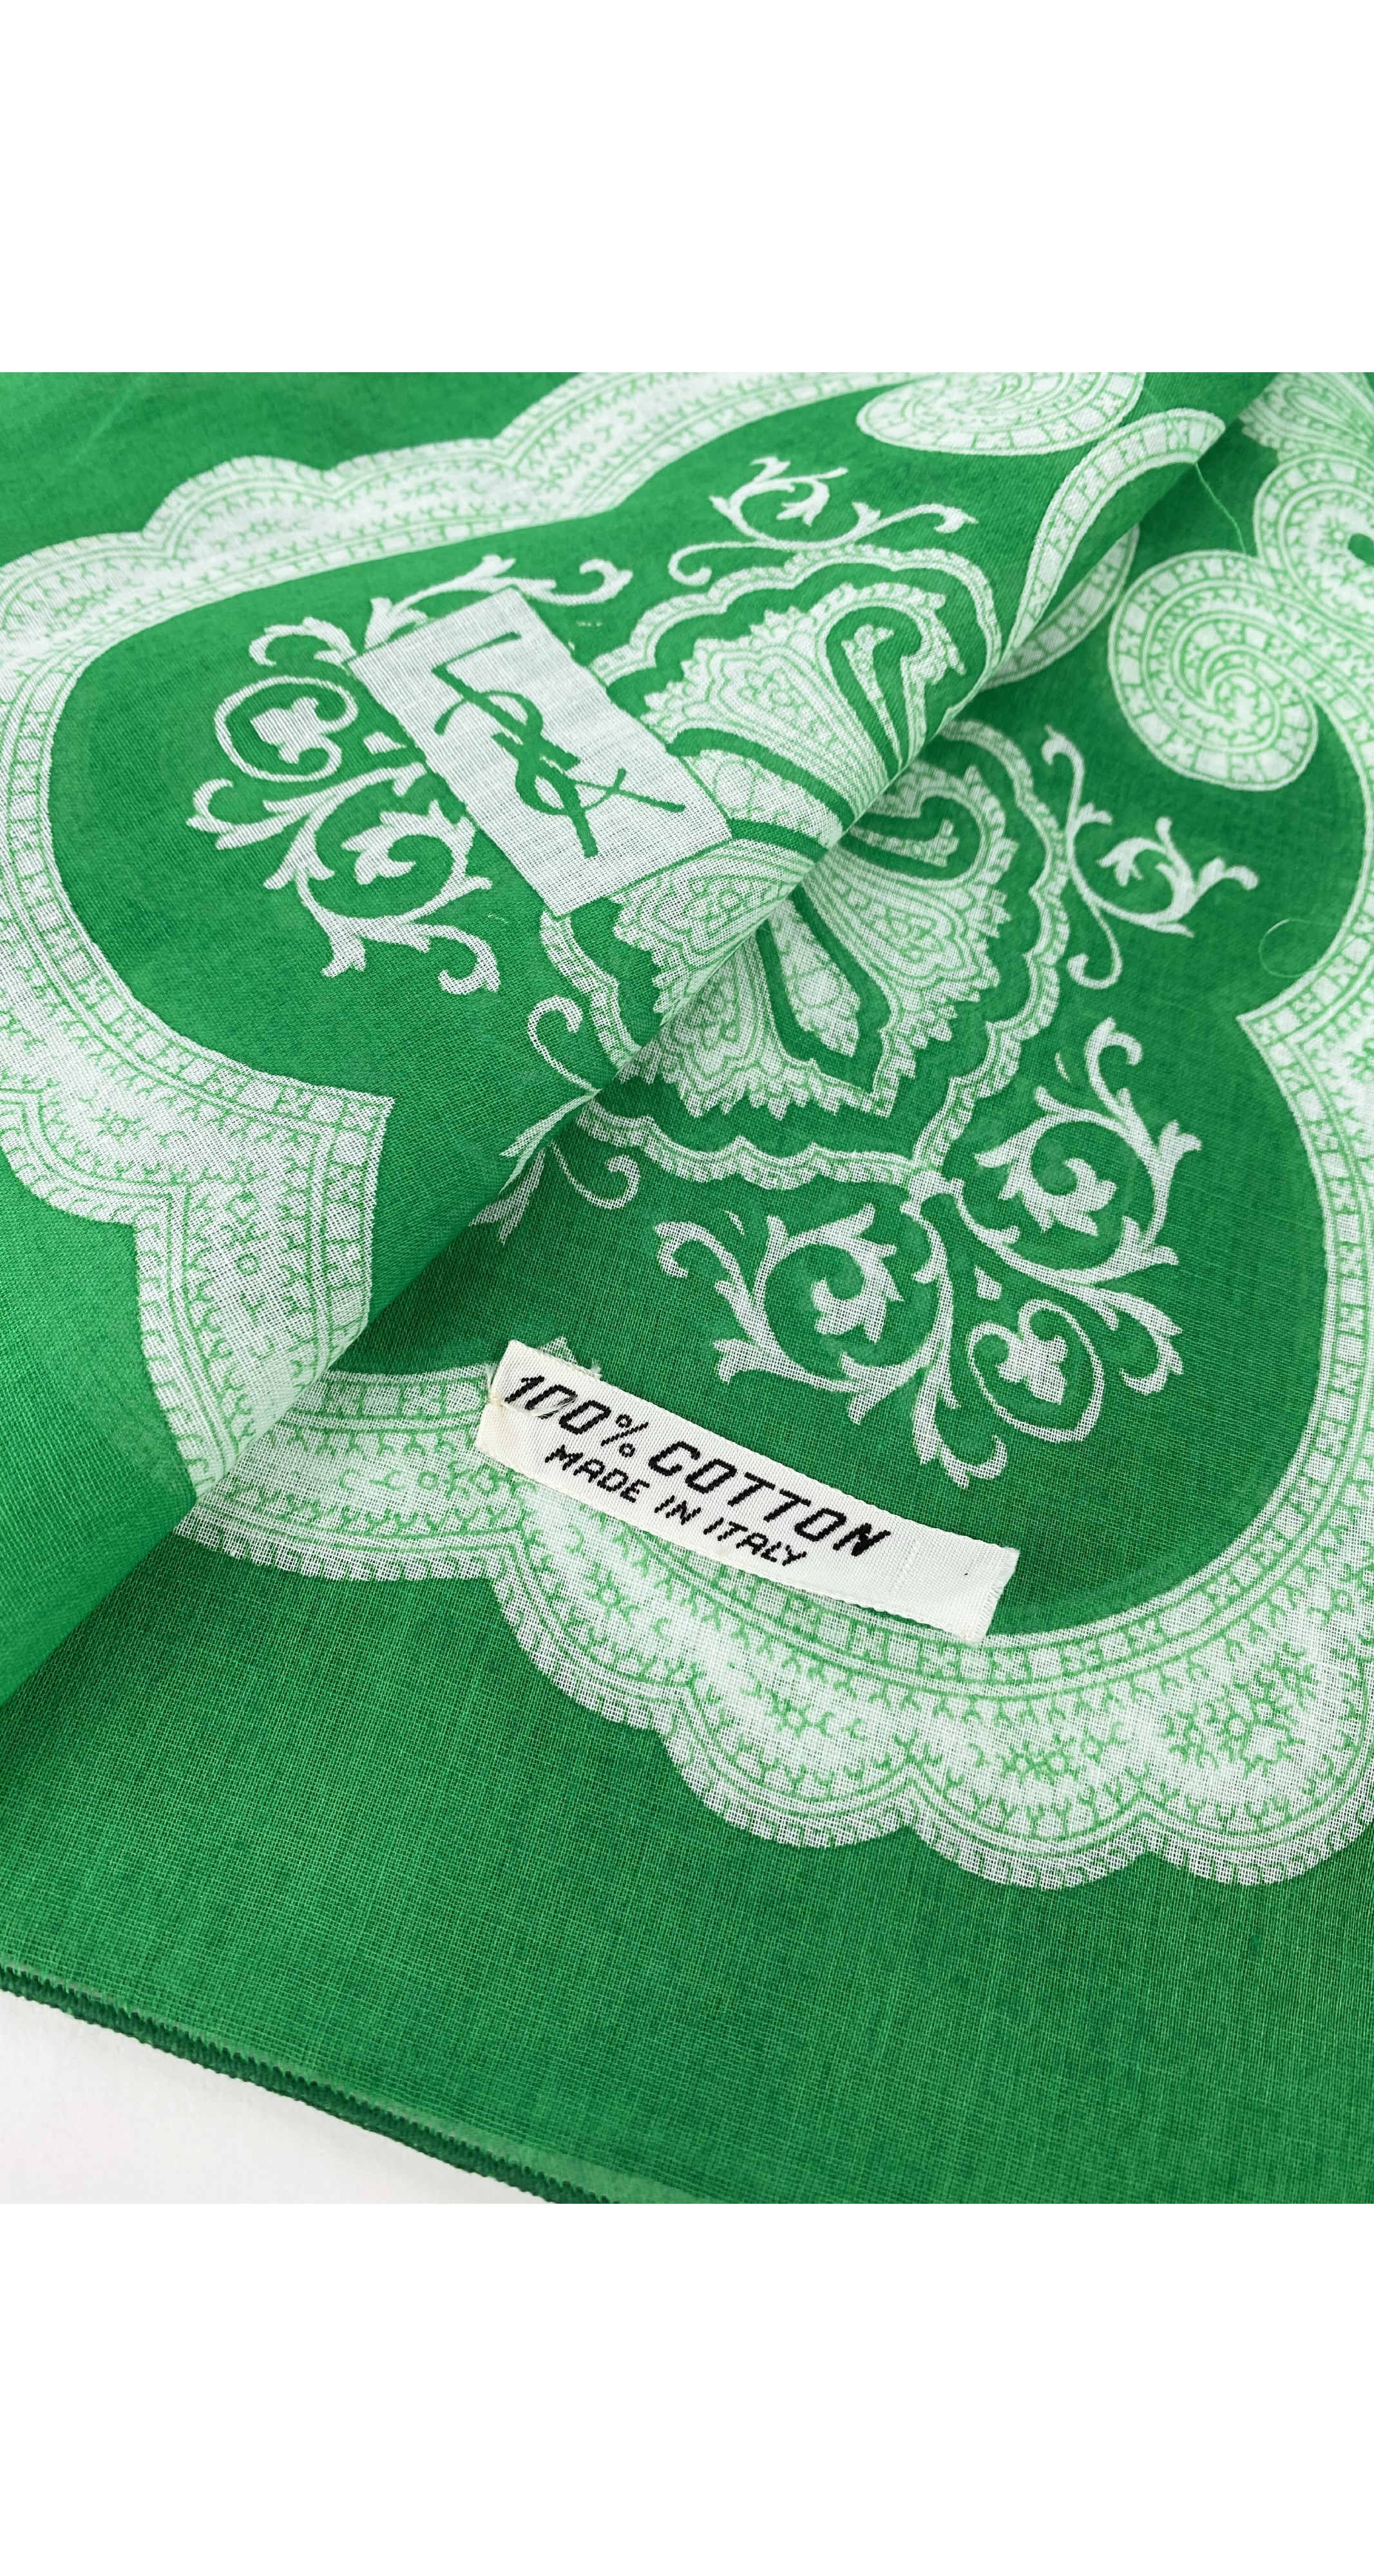 1980s Green & White Bandana Print Cotton Scarf